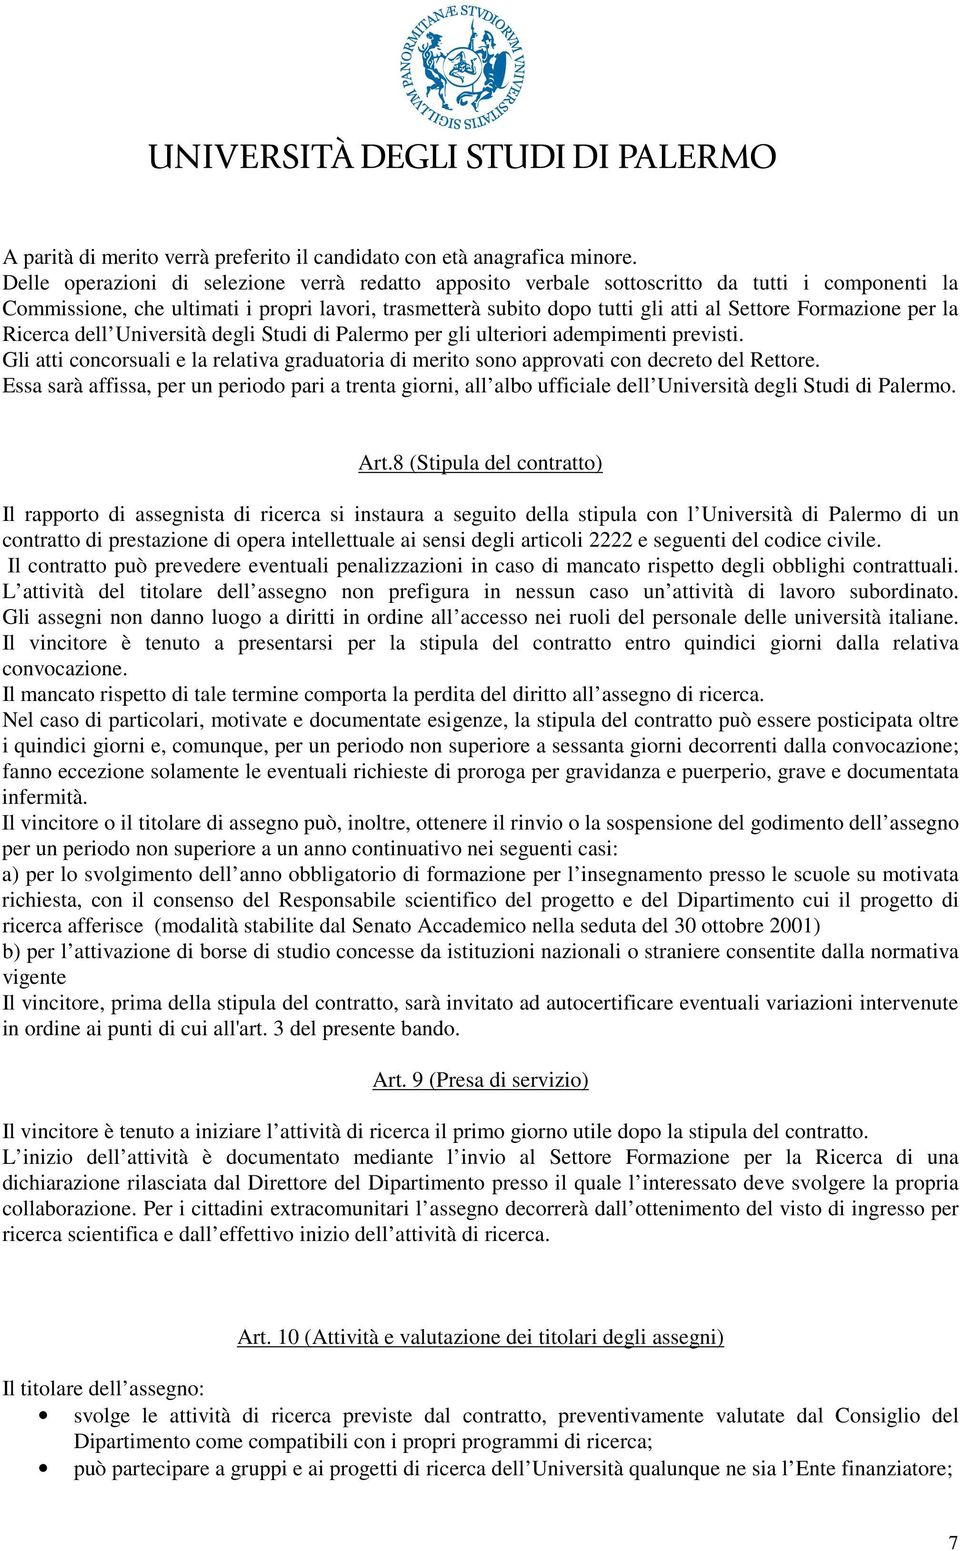 Formazione per la Ricerca dell Università degli Studi di Palermo per gli ulteriori adempimenti previsti.